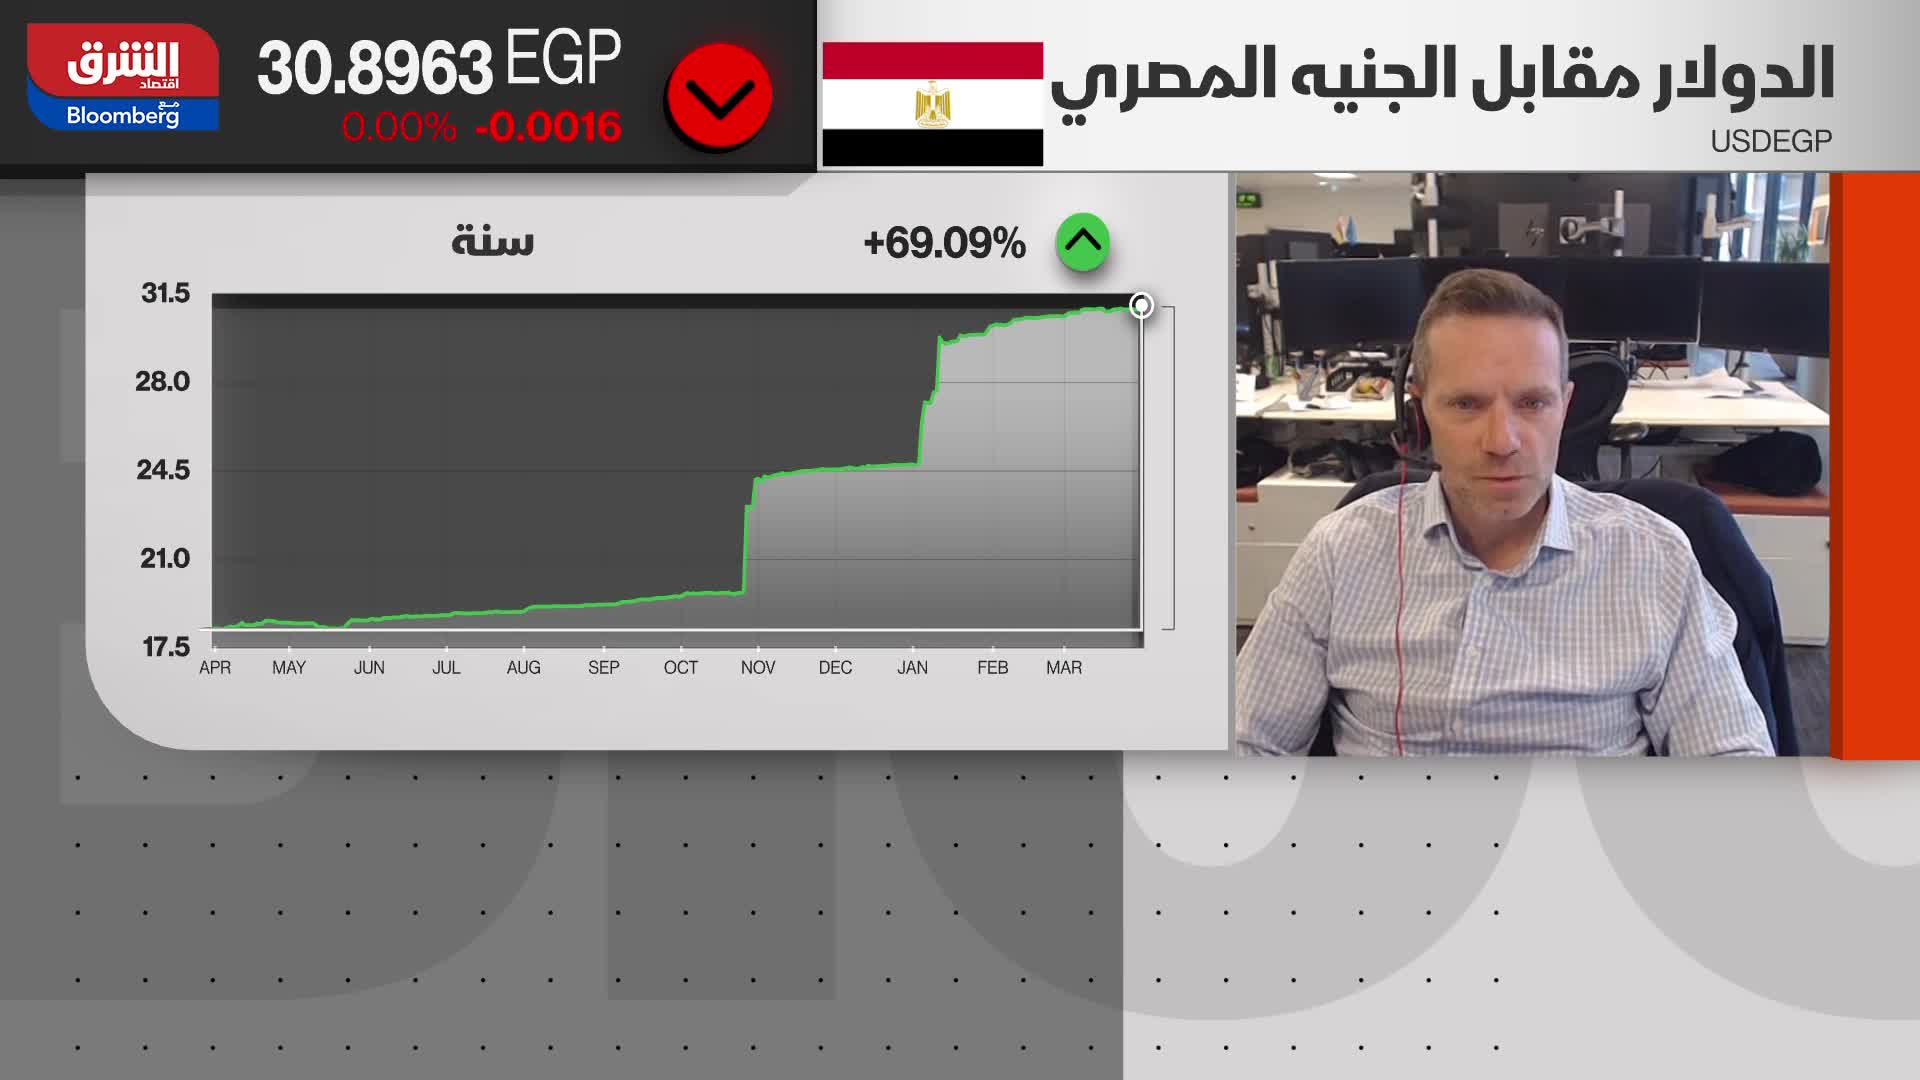 نك إيزينغر: هناك مساحة لمزيد من رفع معدلات الفائدة لدى البنك المركزي المصري